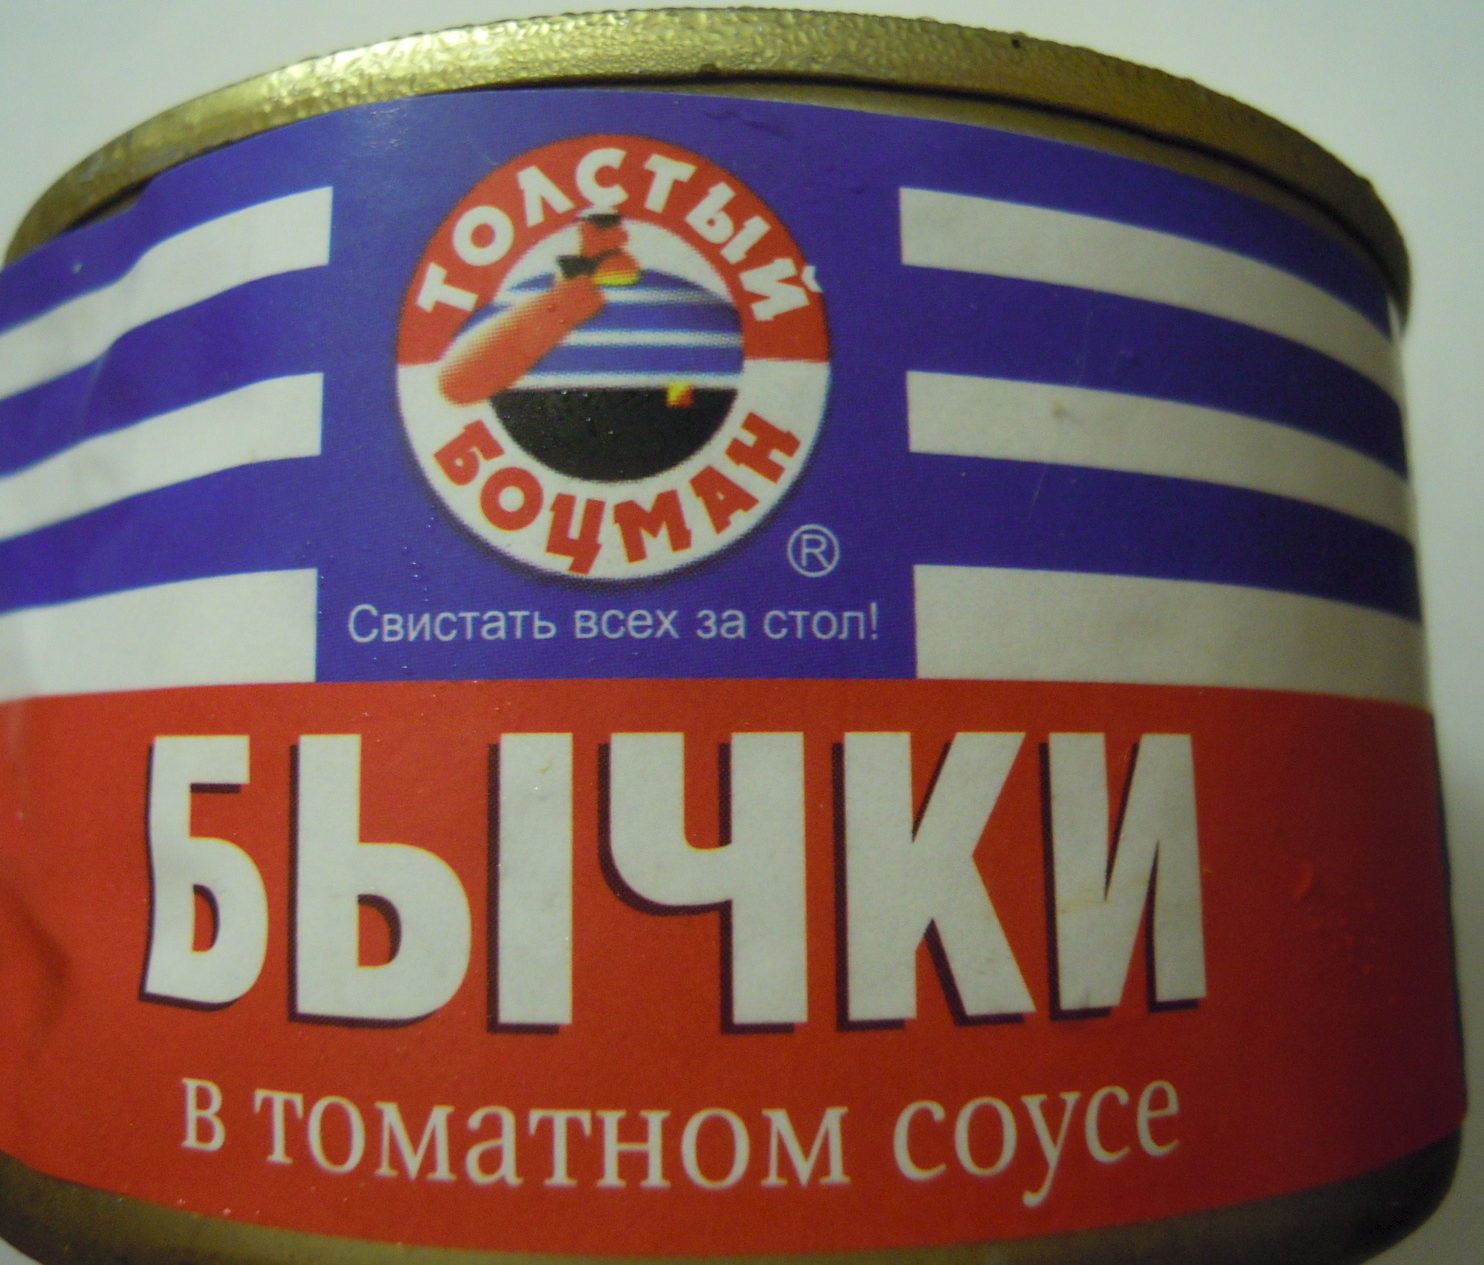 Бычки в томатном соусе - Product - ru